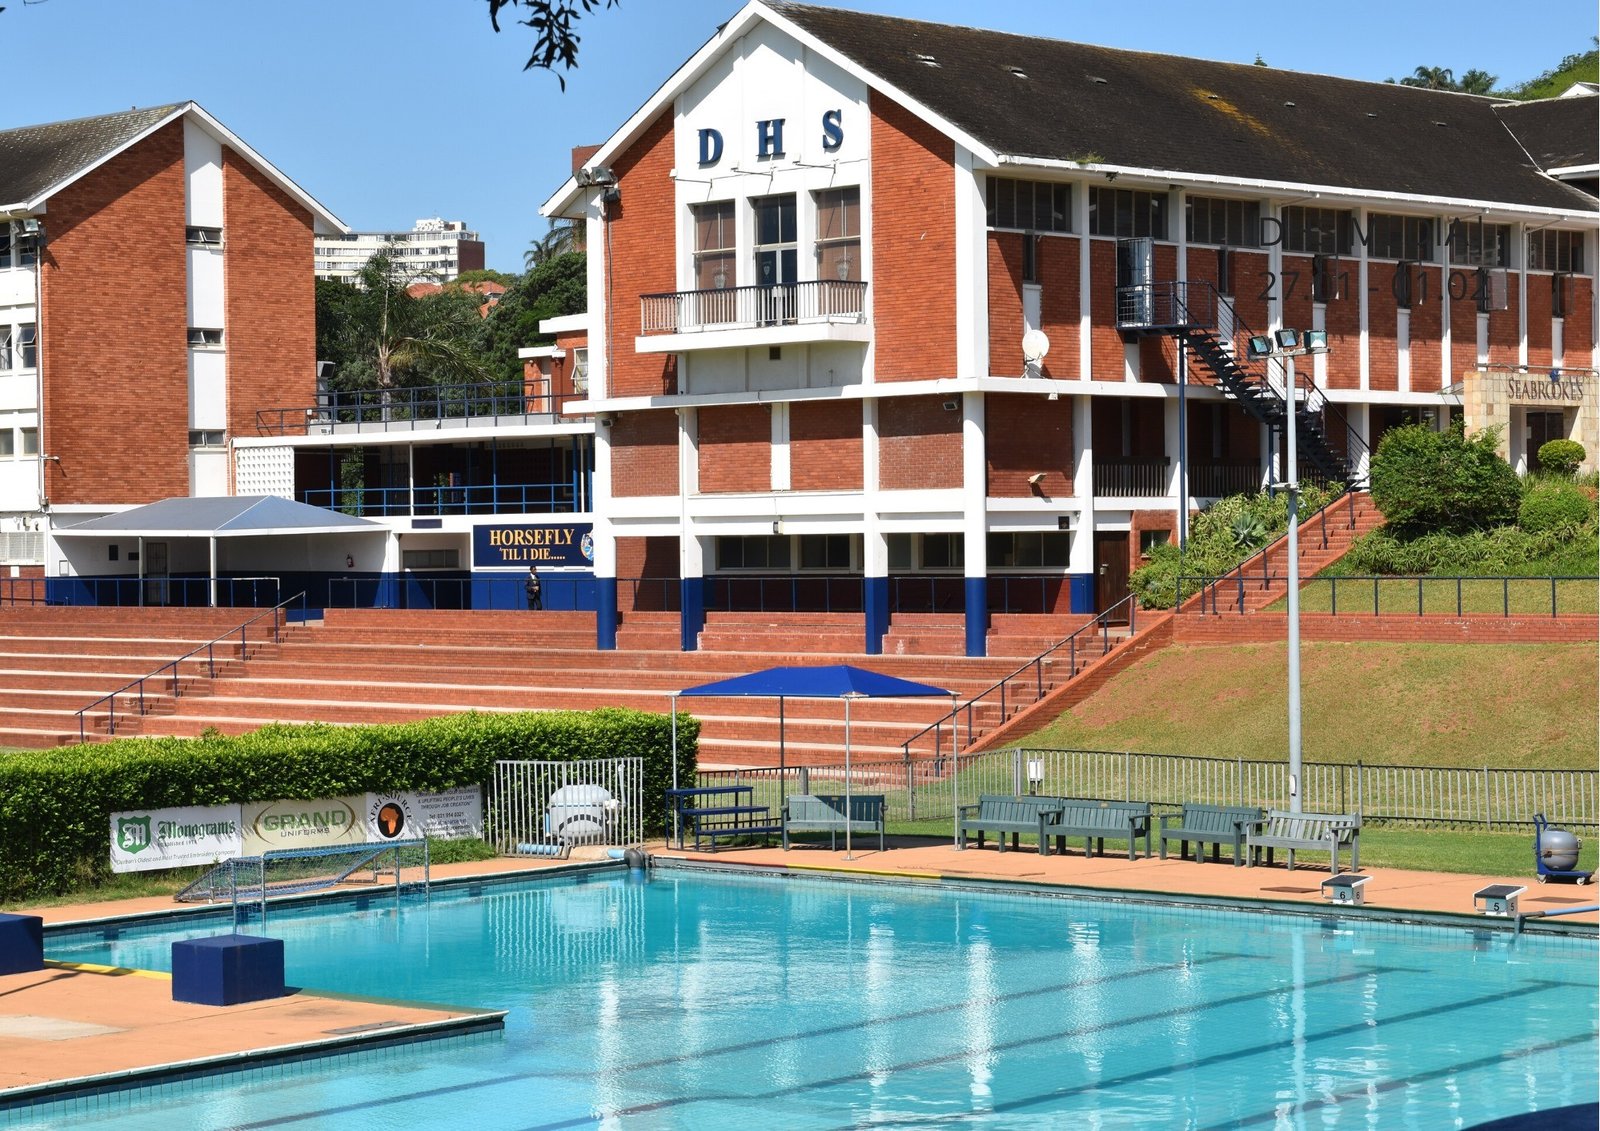 Best High Schools in Durban